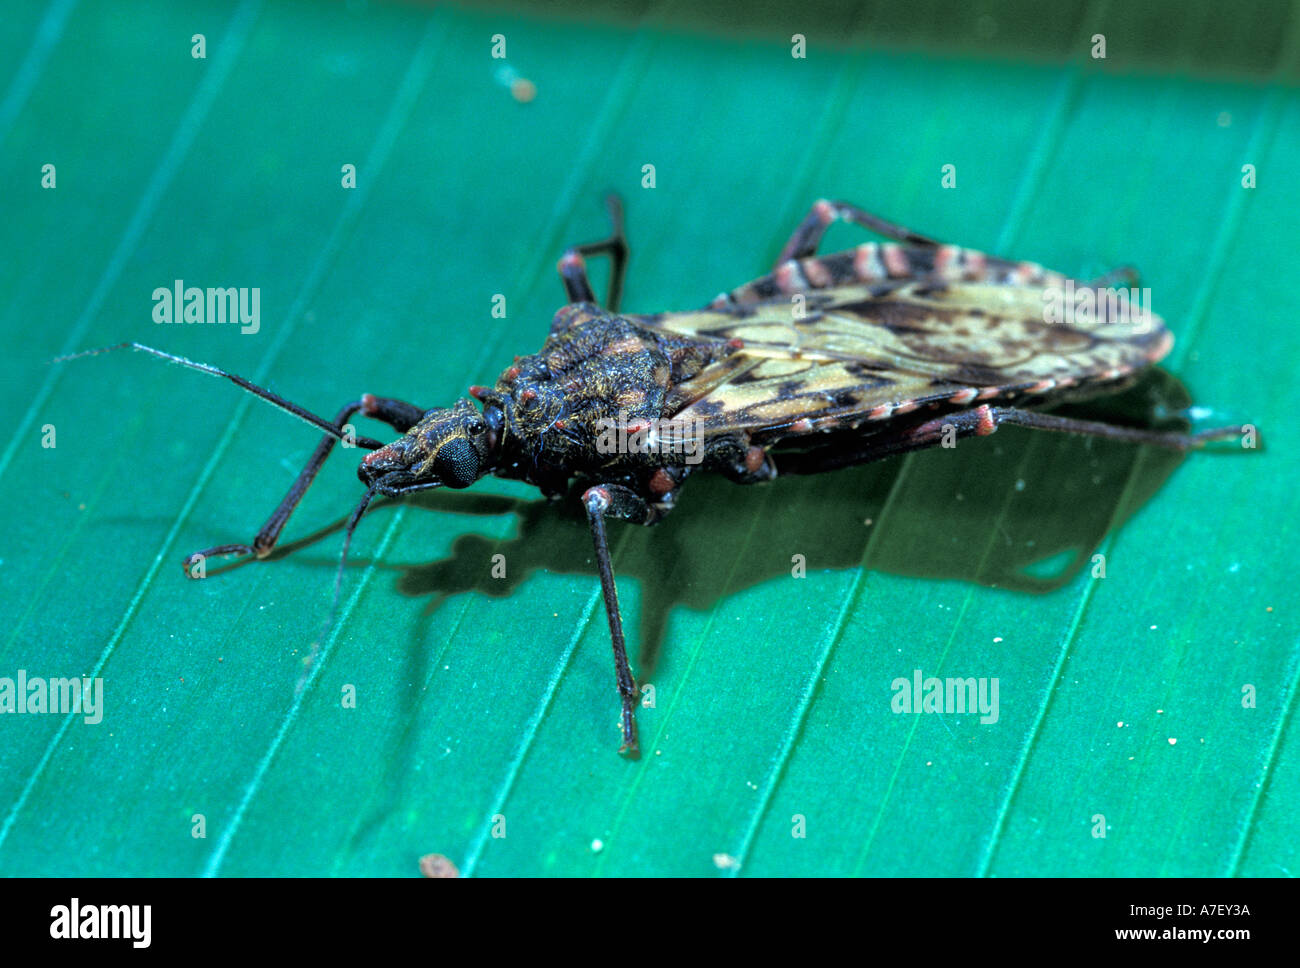 CA, le Panama, l'île de Barro Colorado, bug de chagas : l'une des espèces que l'assassin bug peut transmettre la maladie d chasas Banque D'Images